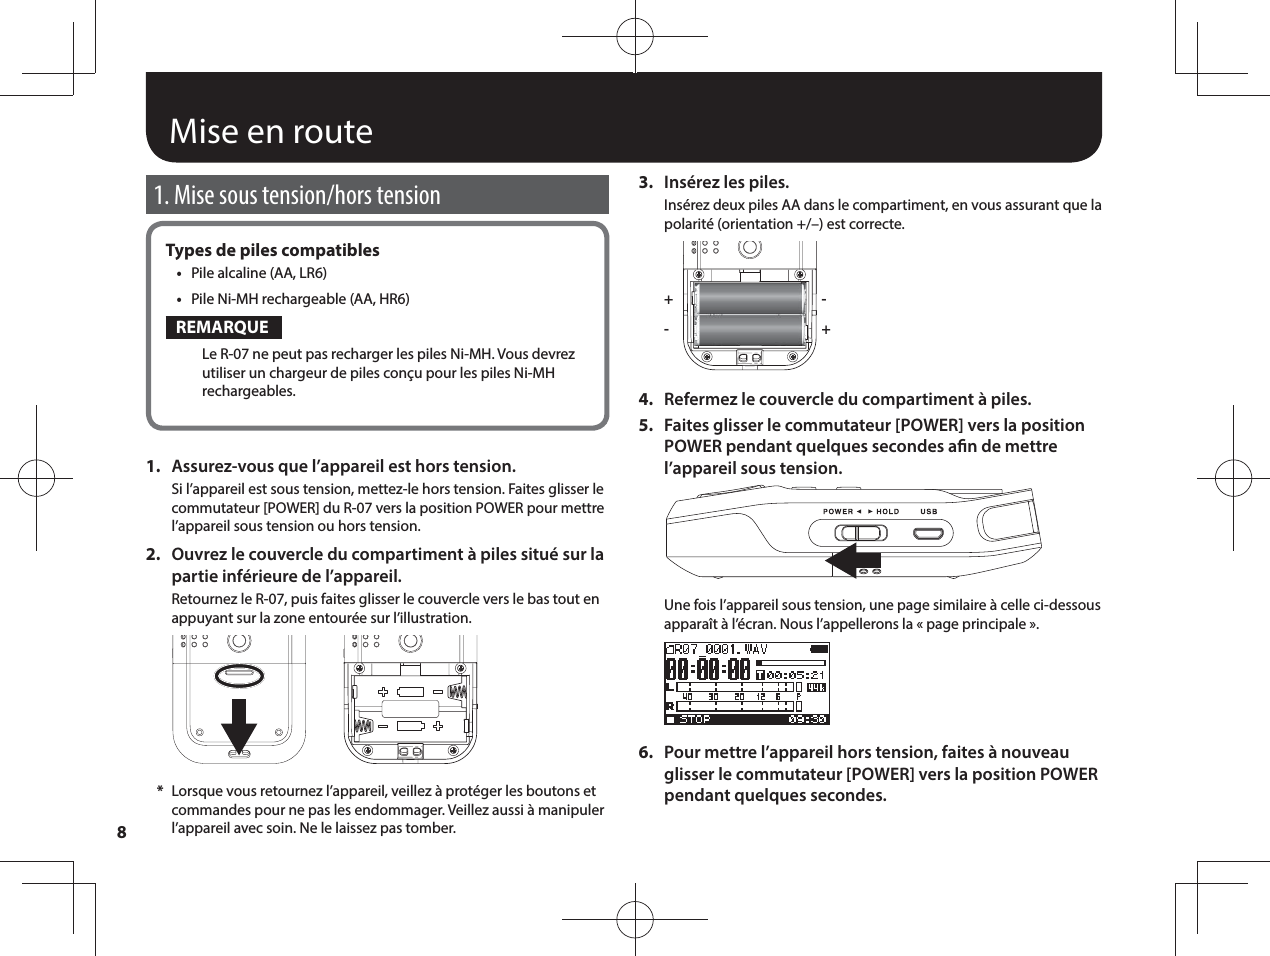 8Mise en route1. Mise sous tension/hors tensionTypes de piles compatibles•  Pile alcaline (AA, LR6)•  Pile Ni-MH rechargeable (AA, HR6)REMARQUELe R-07 ne peut pas recharger les piles Ni-MH. Vous devrez utiliser un chargeur de piles conçu pour les piles Ni-MH rechargeables.1.  Assurez-vous que l’appareil est hors tension.Si l’appareil est sous tension, mettez-le hors tension. Faites glisser le commutateur [POWER] du R-07 vers la position POWER pour mettre l’appareil sous tension ou hors tension.2.  Ouvrez le couvercle du compartiment à piles situé sur la partie inférieure de l’appareil.Retournez le R-07, puis faites glisser le couvercle vers le bas tout en appuyant sur la zone entourée sur l’illustration. *Lorsque vous retournez l’appareil, veillez à protéger les boutons et commandes pour ne pas les endommager. Veillez aussi à manipuler l’appareil avec soin. Ne le laissez pas tomber.3.  Insérez les piles.Insérez deux piles AA dans le compartiment, en vous assurant que la polarité (orientation +/–) est correcte.++--4.  Refermez le couvercle du compartiment à piles.5.  Faites glisser le commutateur [POWER] vers la position POWER pendant quelques secondes an de mettre l’appareil sous tension.Une fois l’appareil sous tension, une page similaire à celle ci-dessous apparaît à l’écran. Nous l’appellerons la «page principale».6.  Pour mettre l’appareil hors tension, faites à nouveau glisser le commutateur [POWER] vers la position POWER pendant quelques secondes.